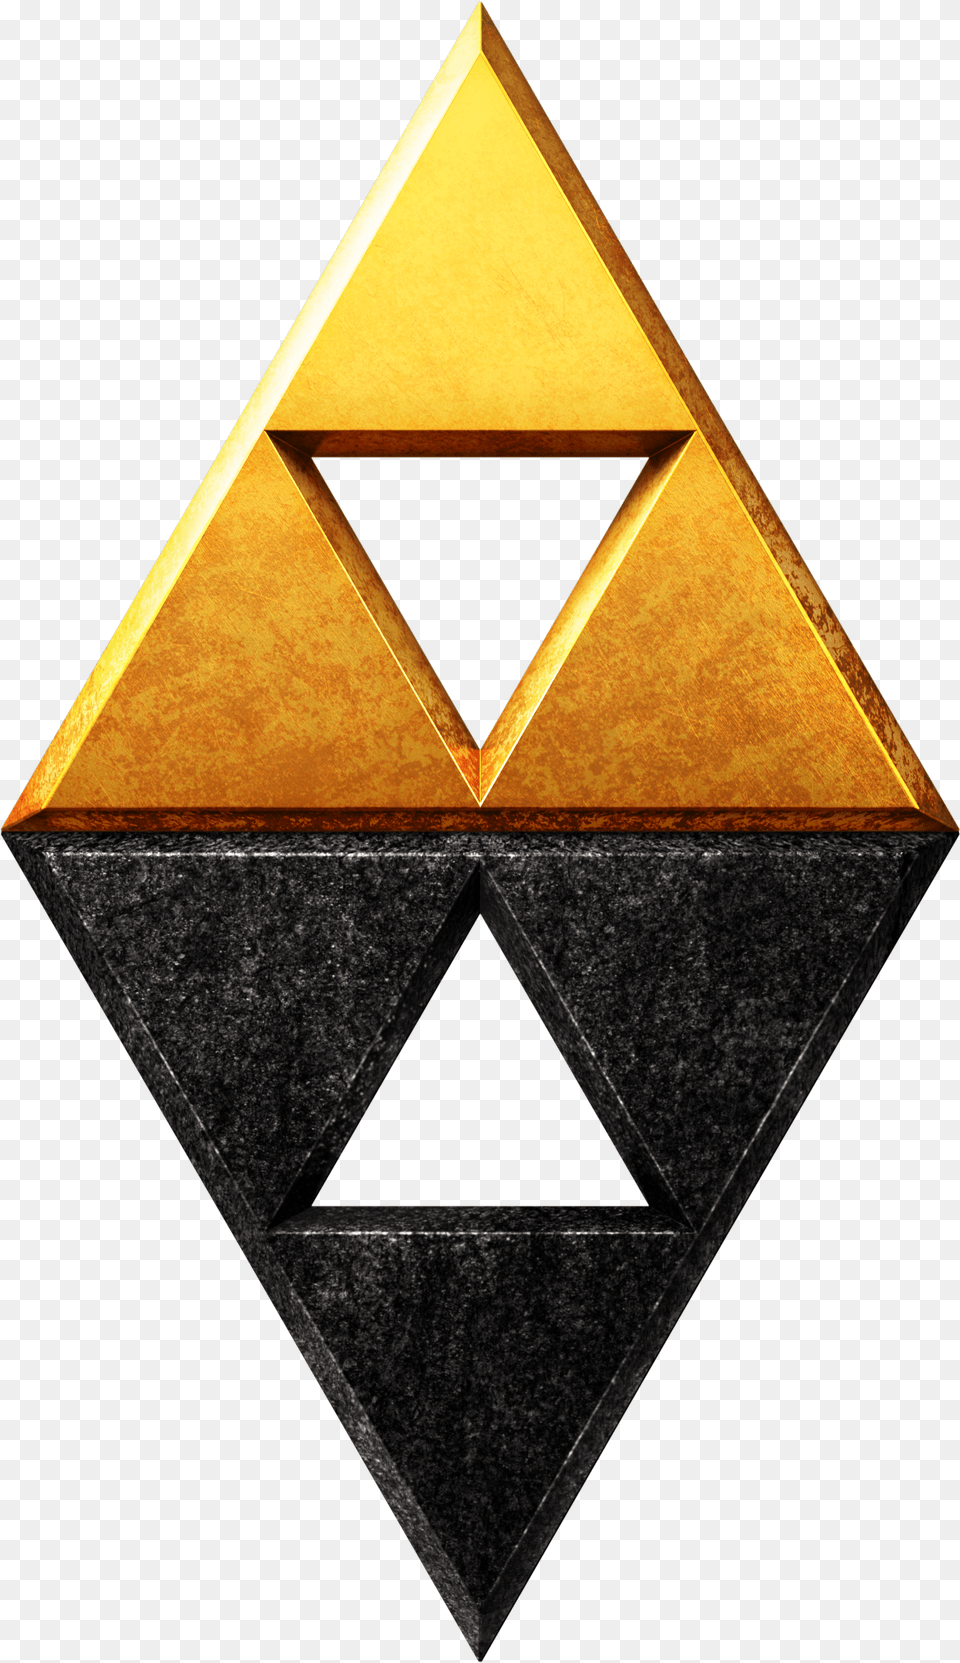 Legend Of Zelda Link Between Legend Of Zelda Triforce, Triangle Png